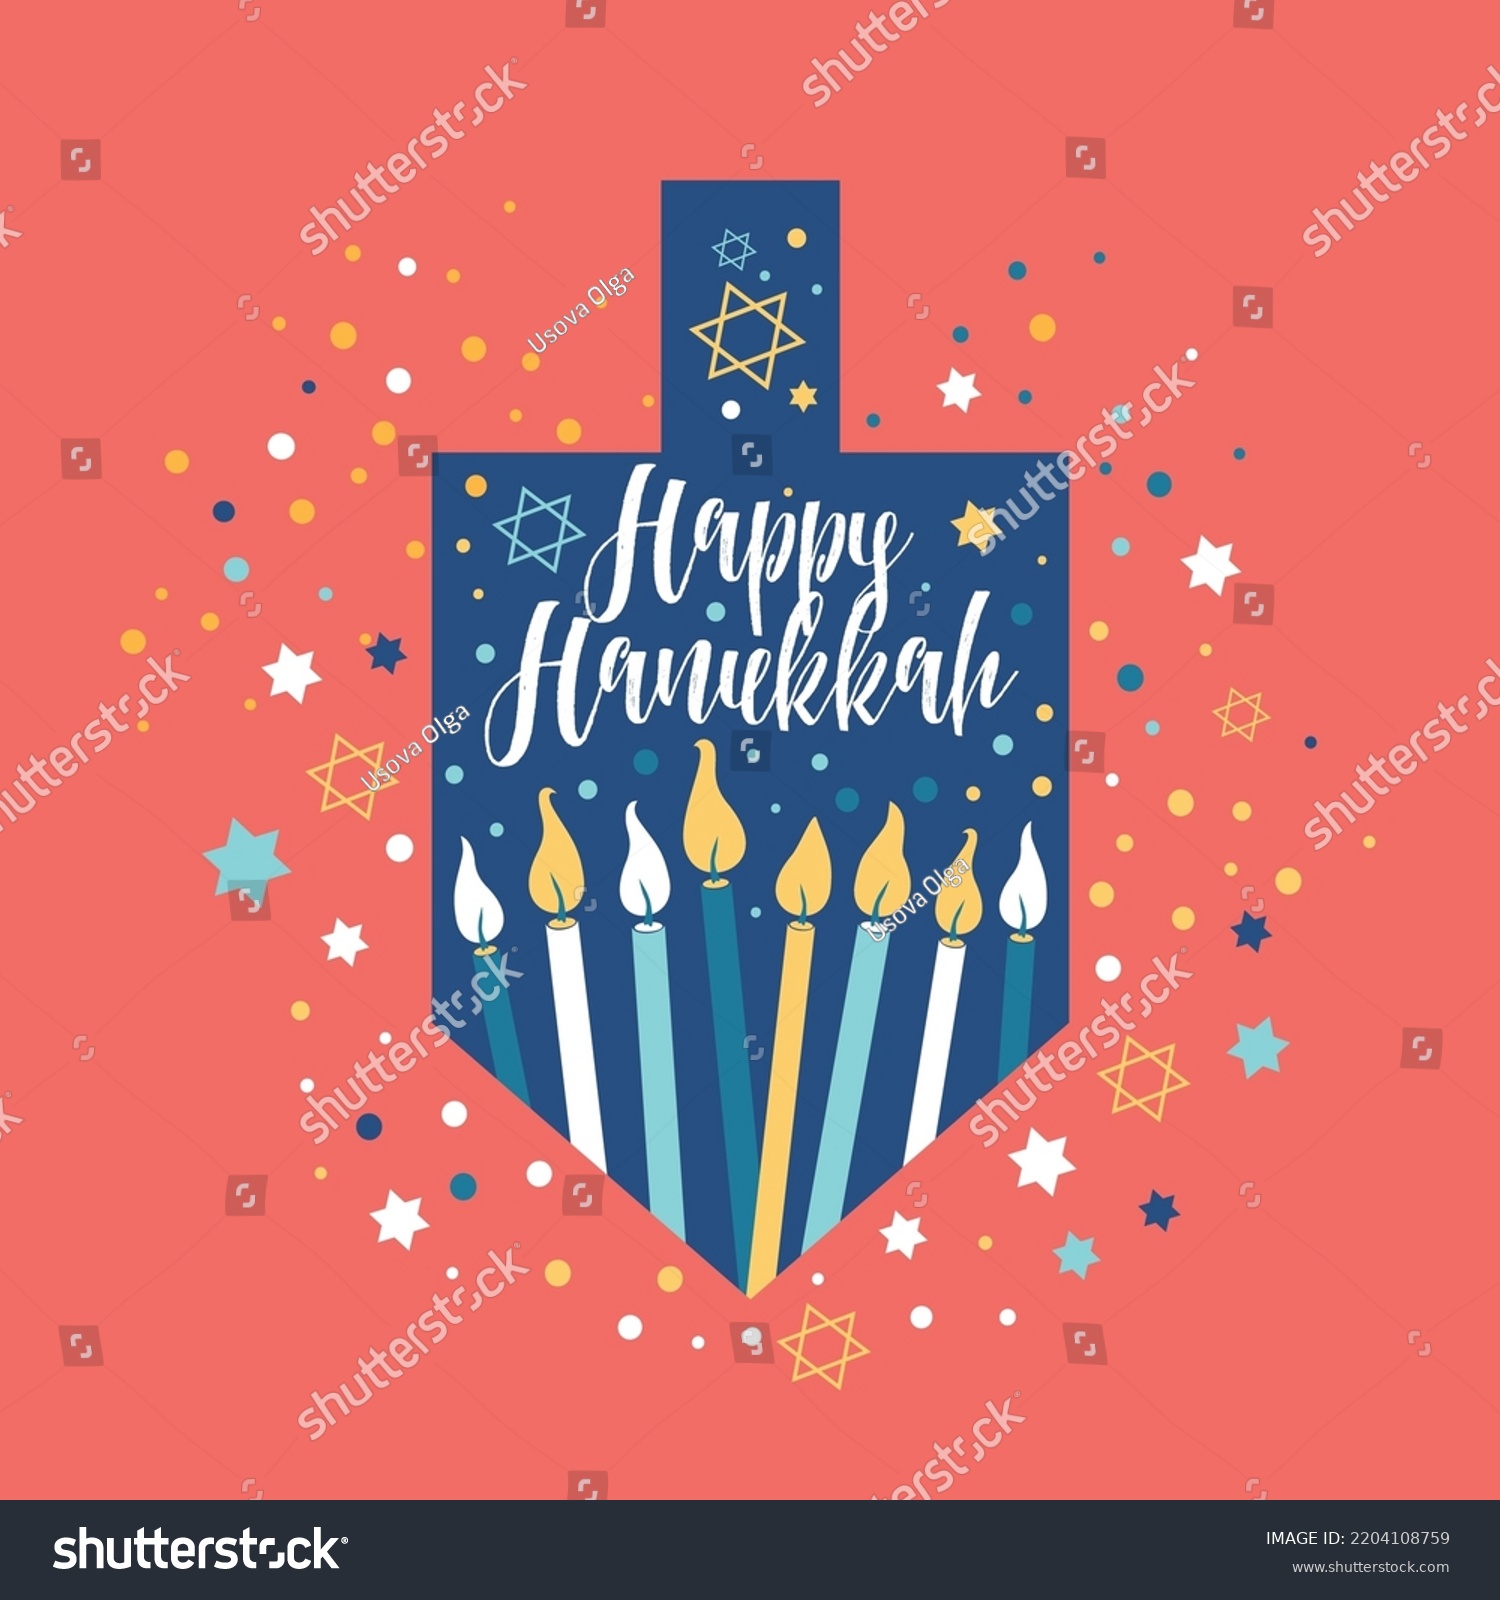 Joyeux Hanoucca, carte de voeux du Festival juif des lumières avec les symboles de Chanoukah dreidels, dessus en rotation, lettrage, bougies de menorah, étoile David. Image vectorielle. Joyeux hanukkah en hébreu.